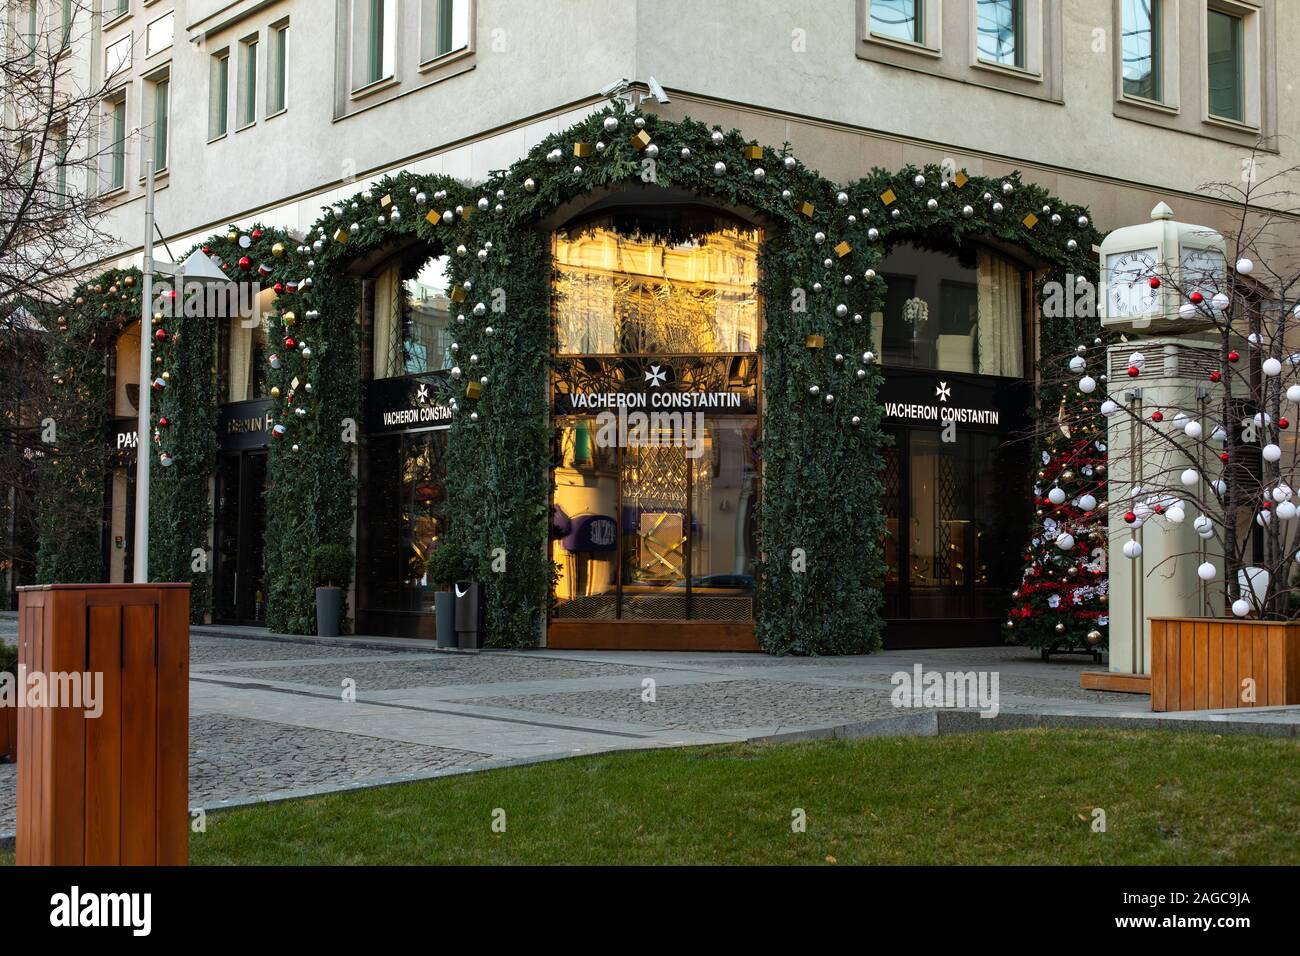 Moskau, Russland - Dezember 1, 2019: Schmuck Boutique watch store Vacheron Constantin in Moskau. Verkauf von Luxus Schmuck und Uhren. Weihnachten decoratio Stockfoto